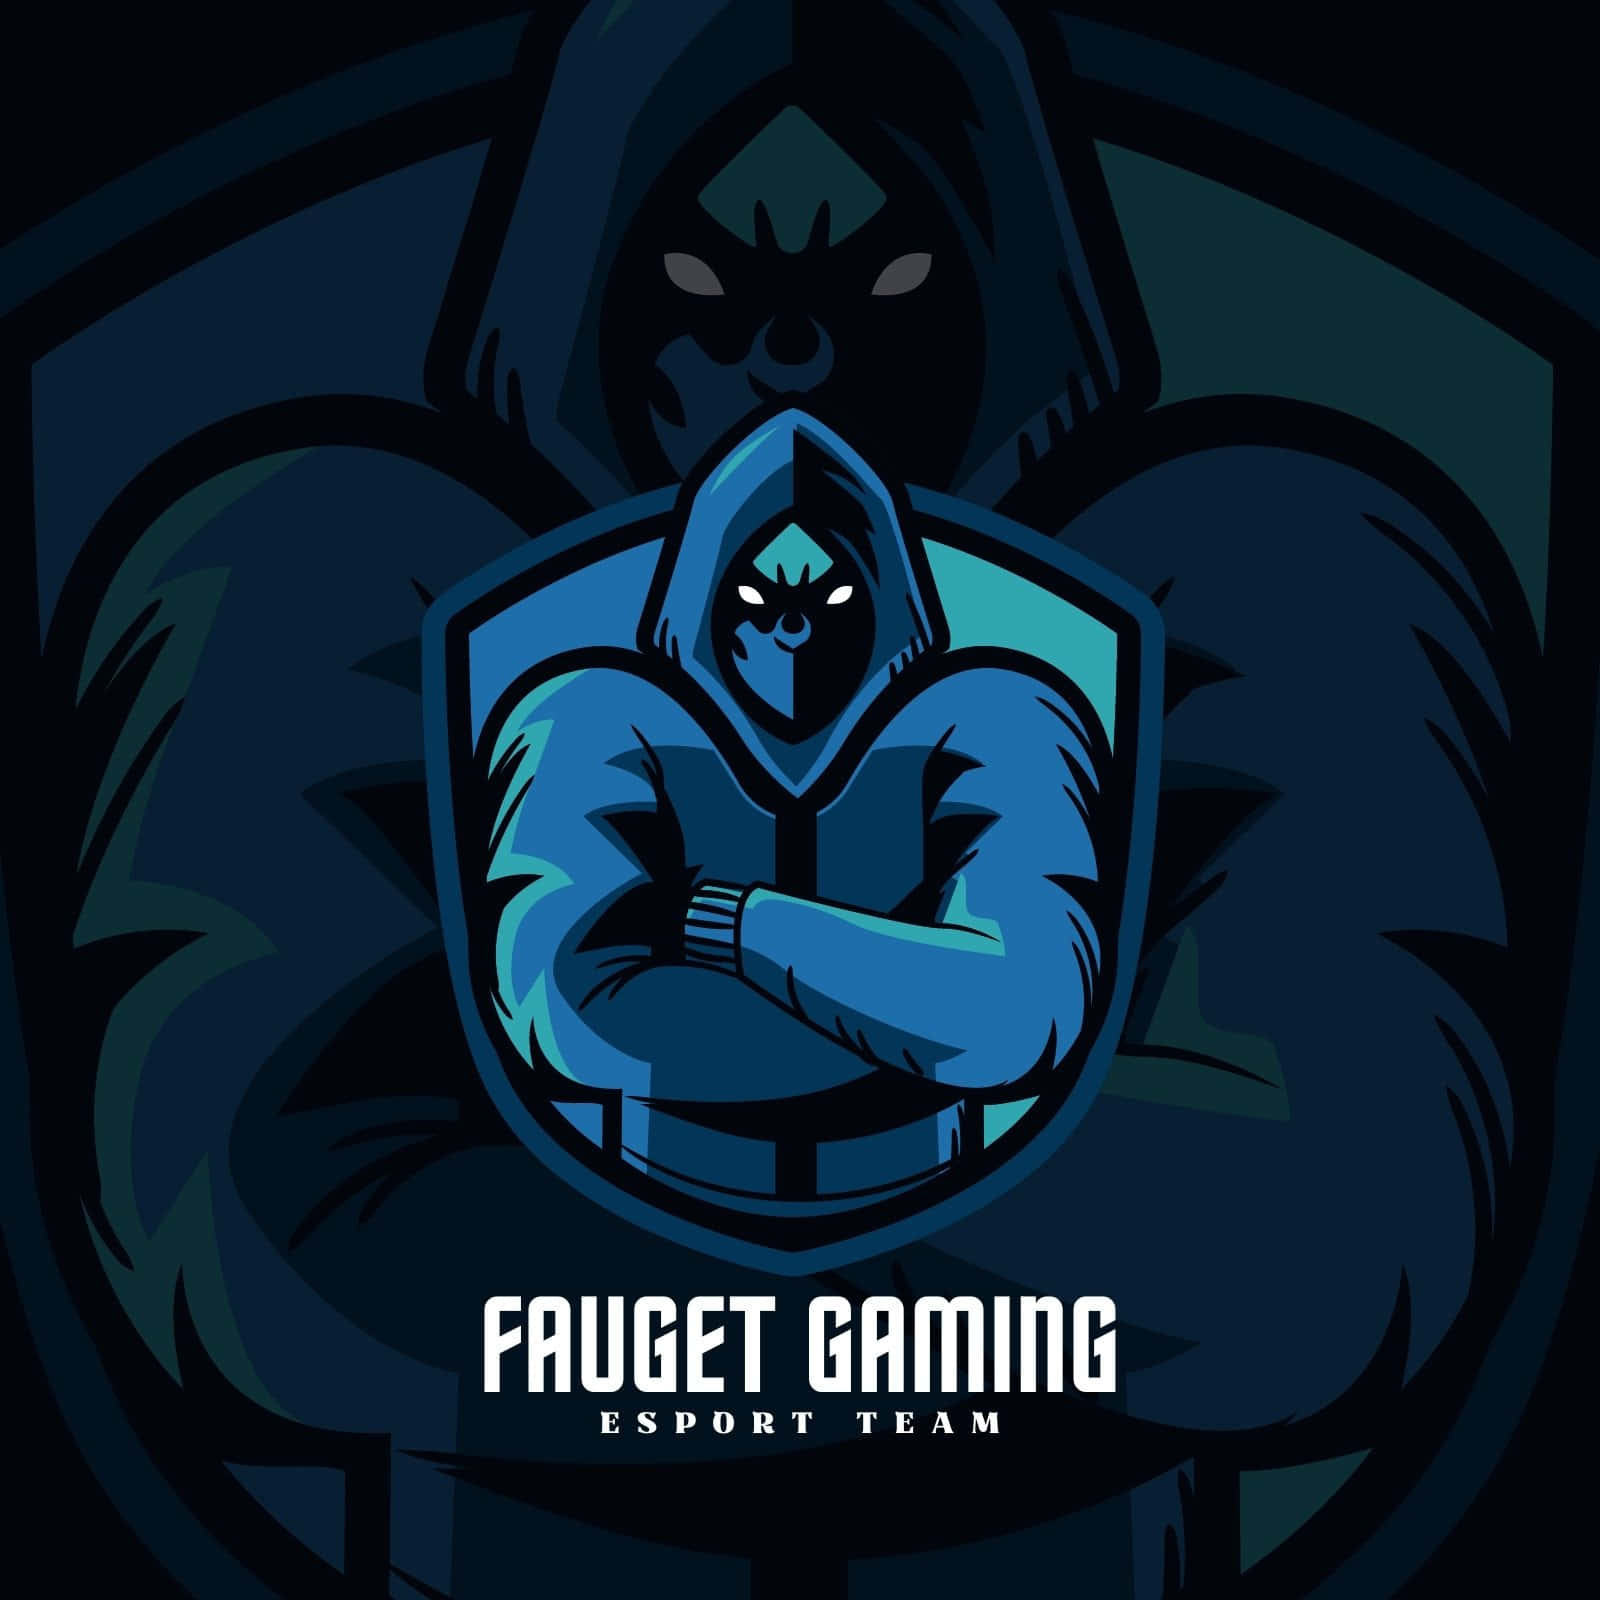 Fauget Gaming Esport Team Logo Picture